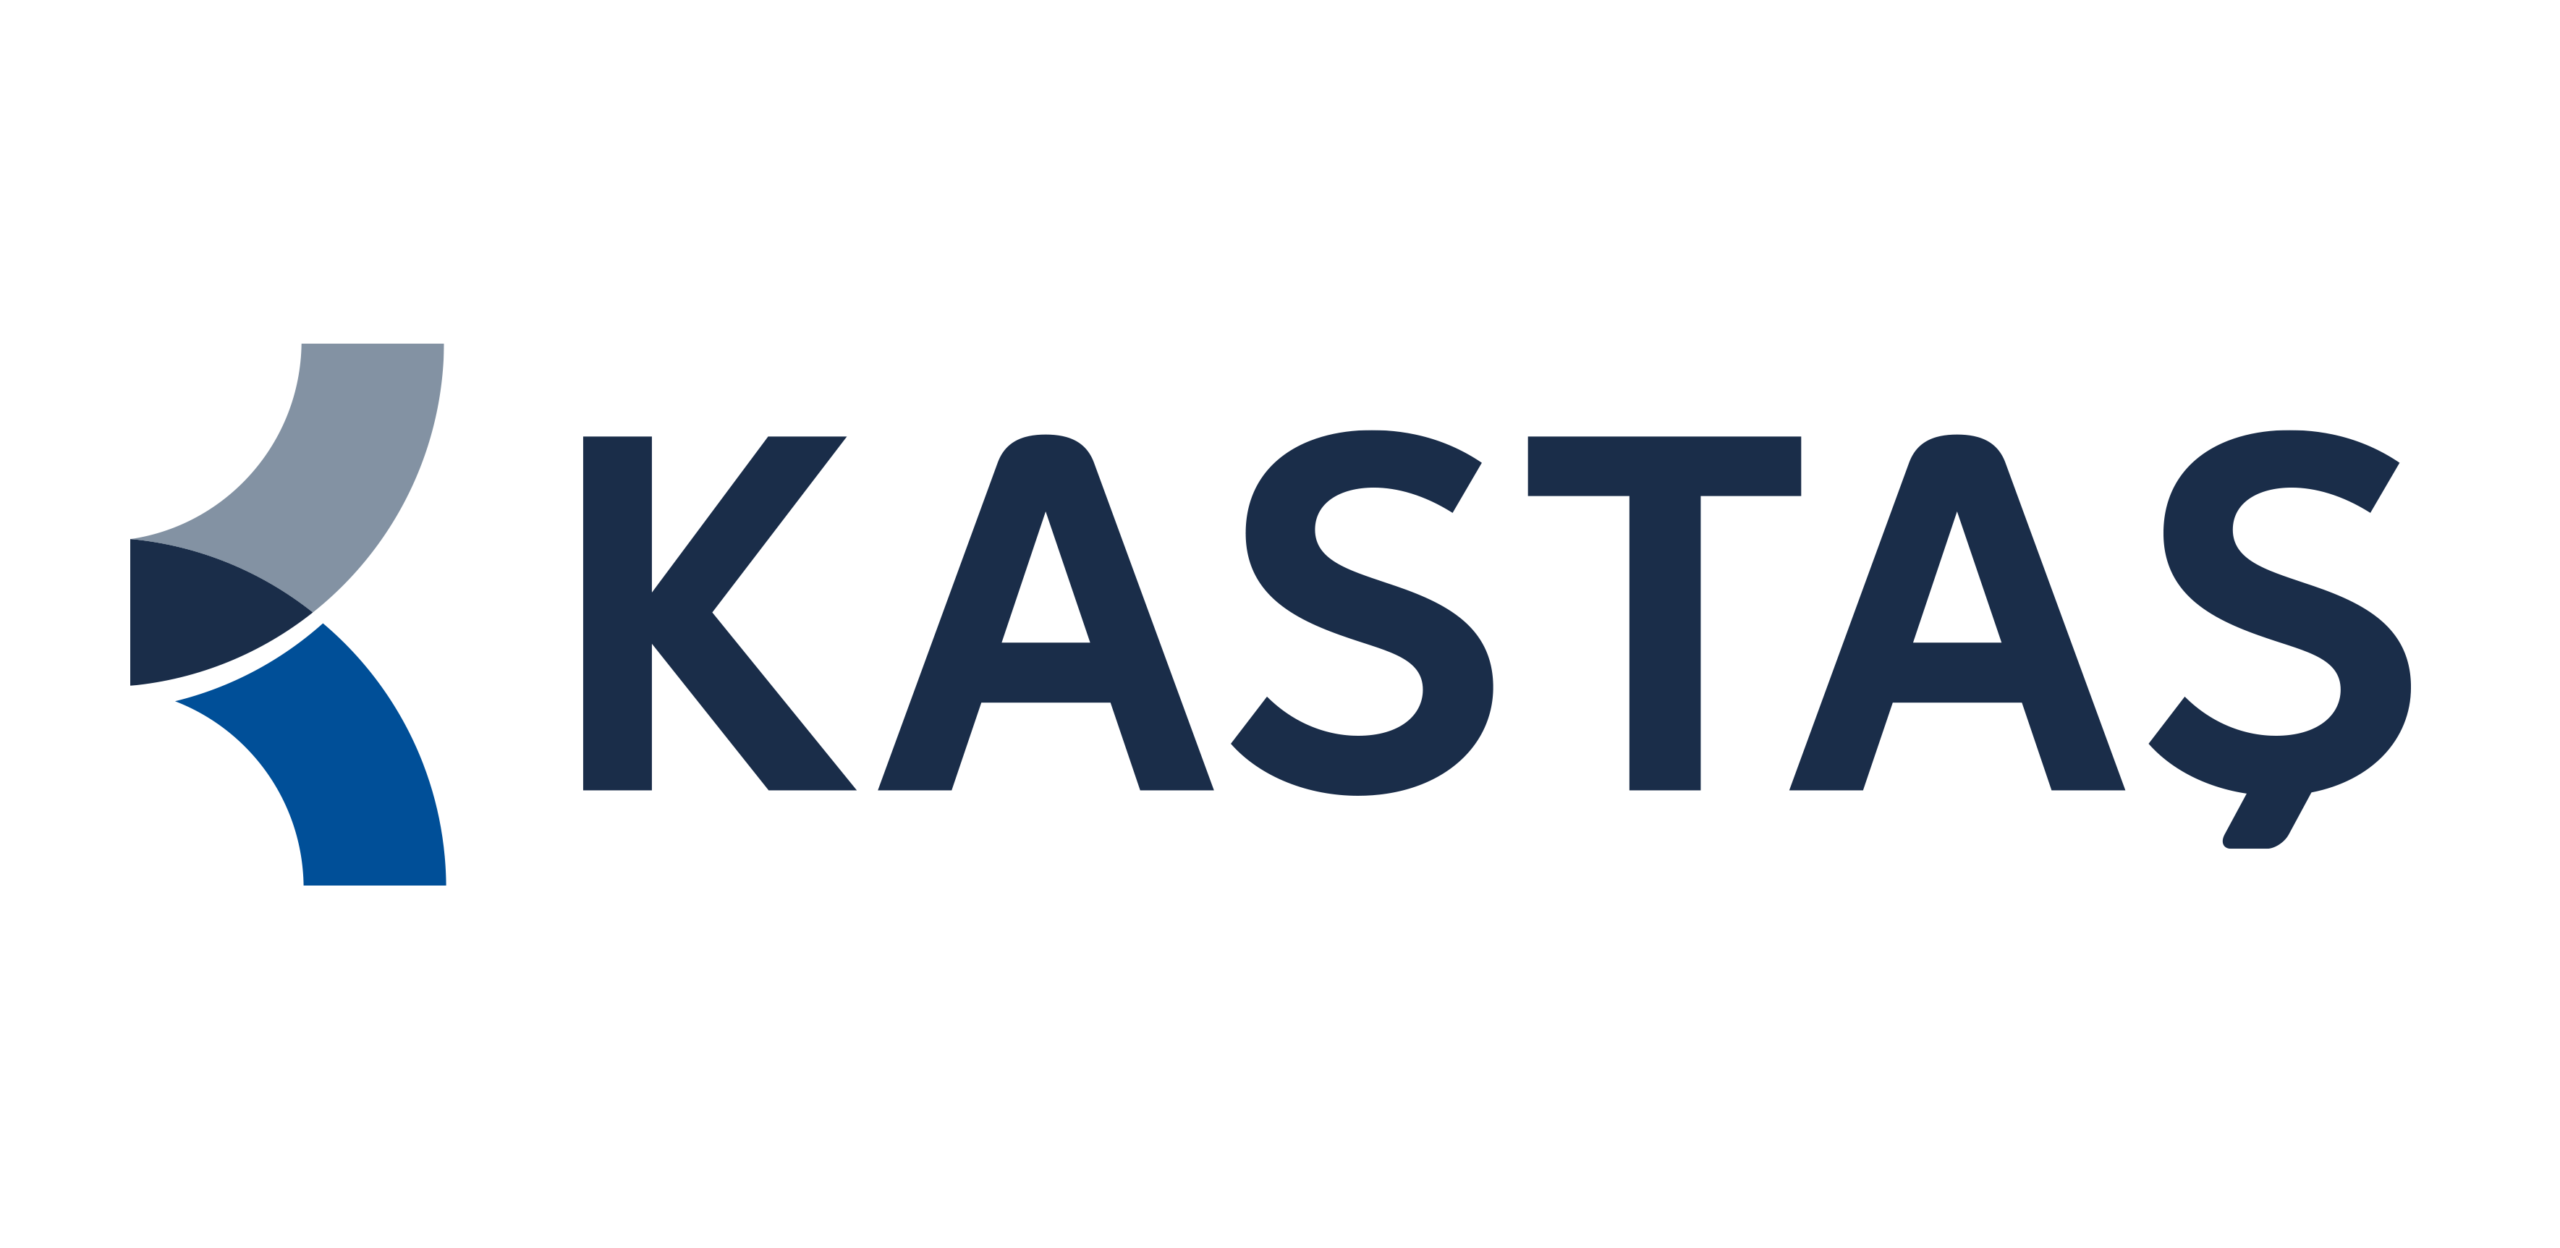 kastas-logo.png